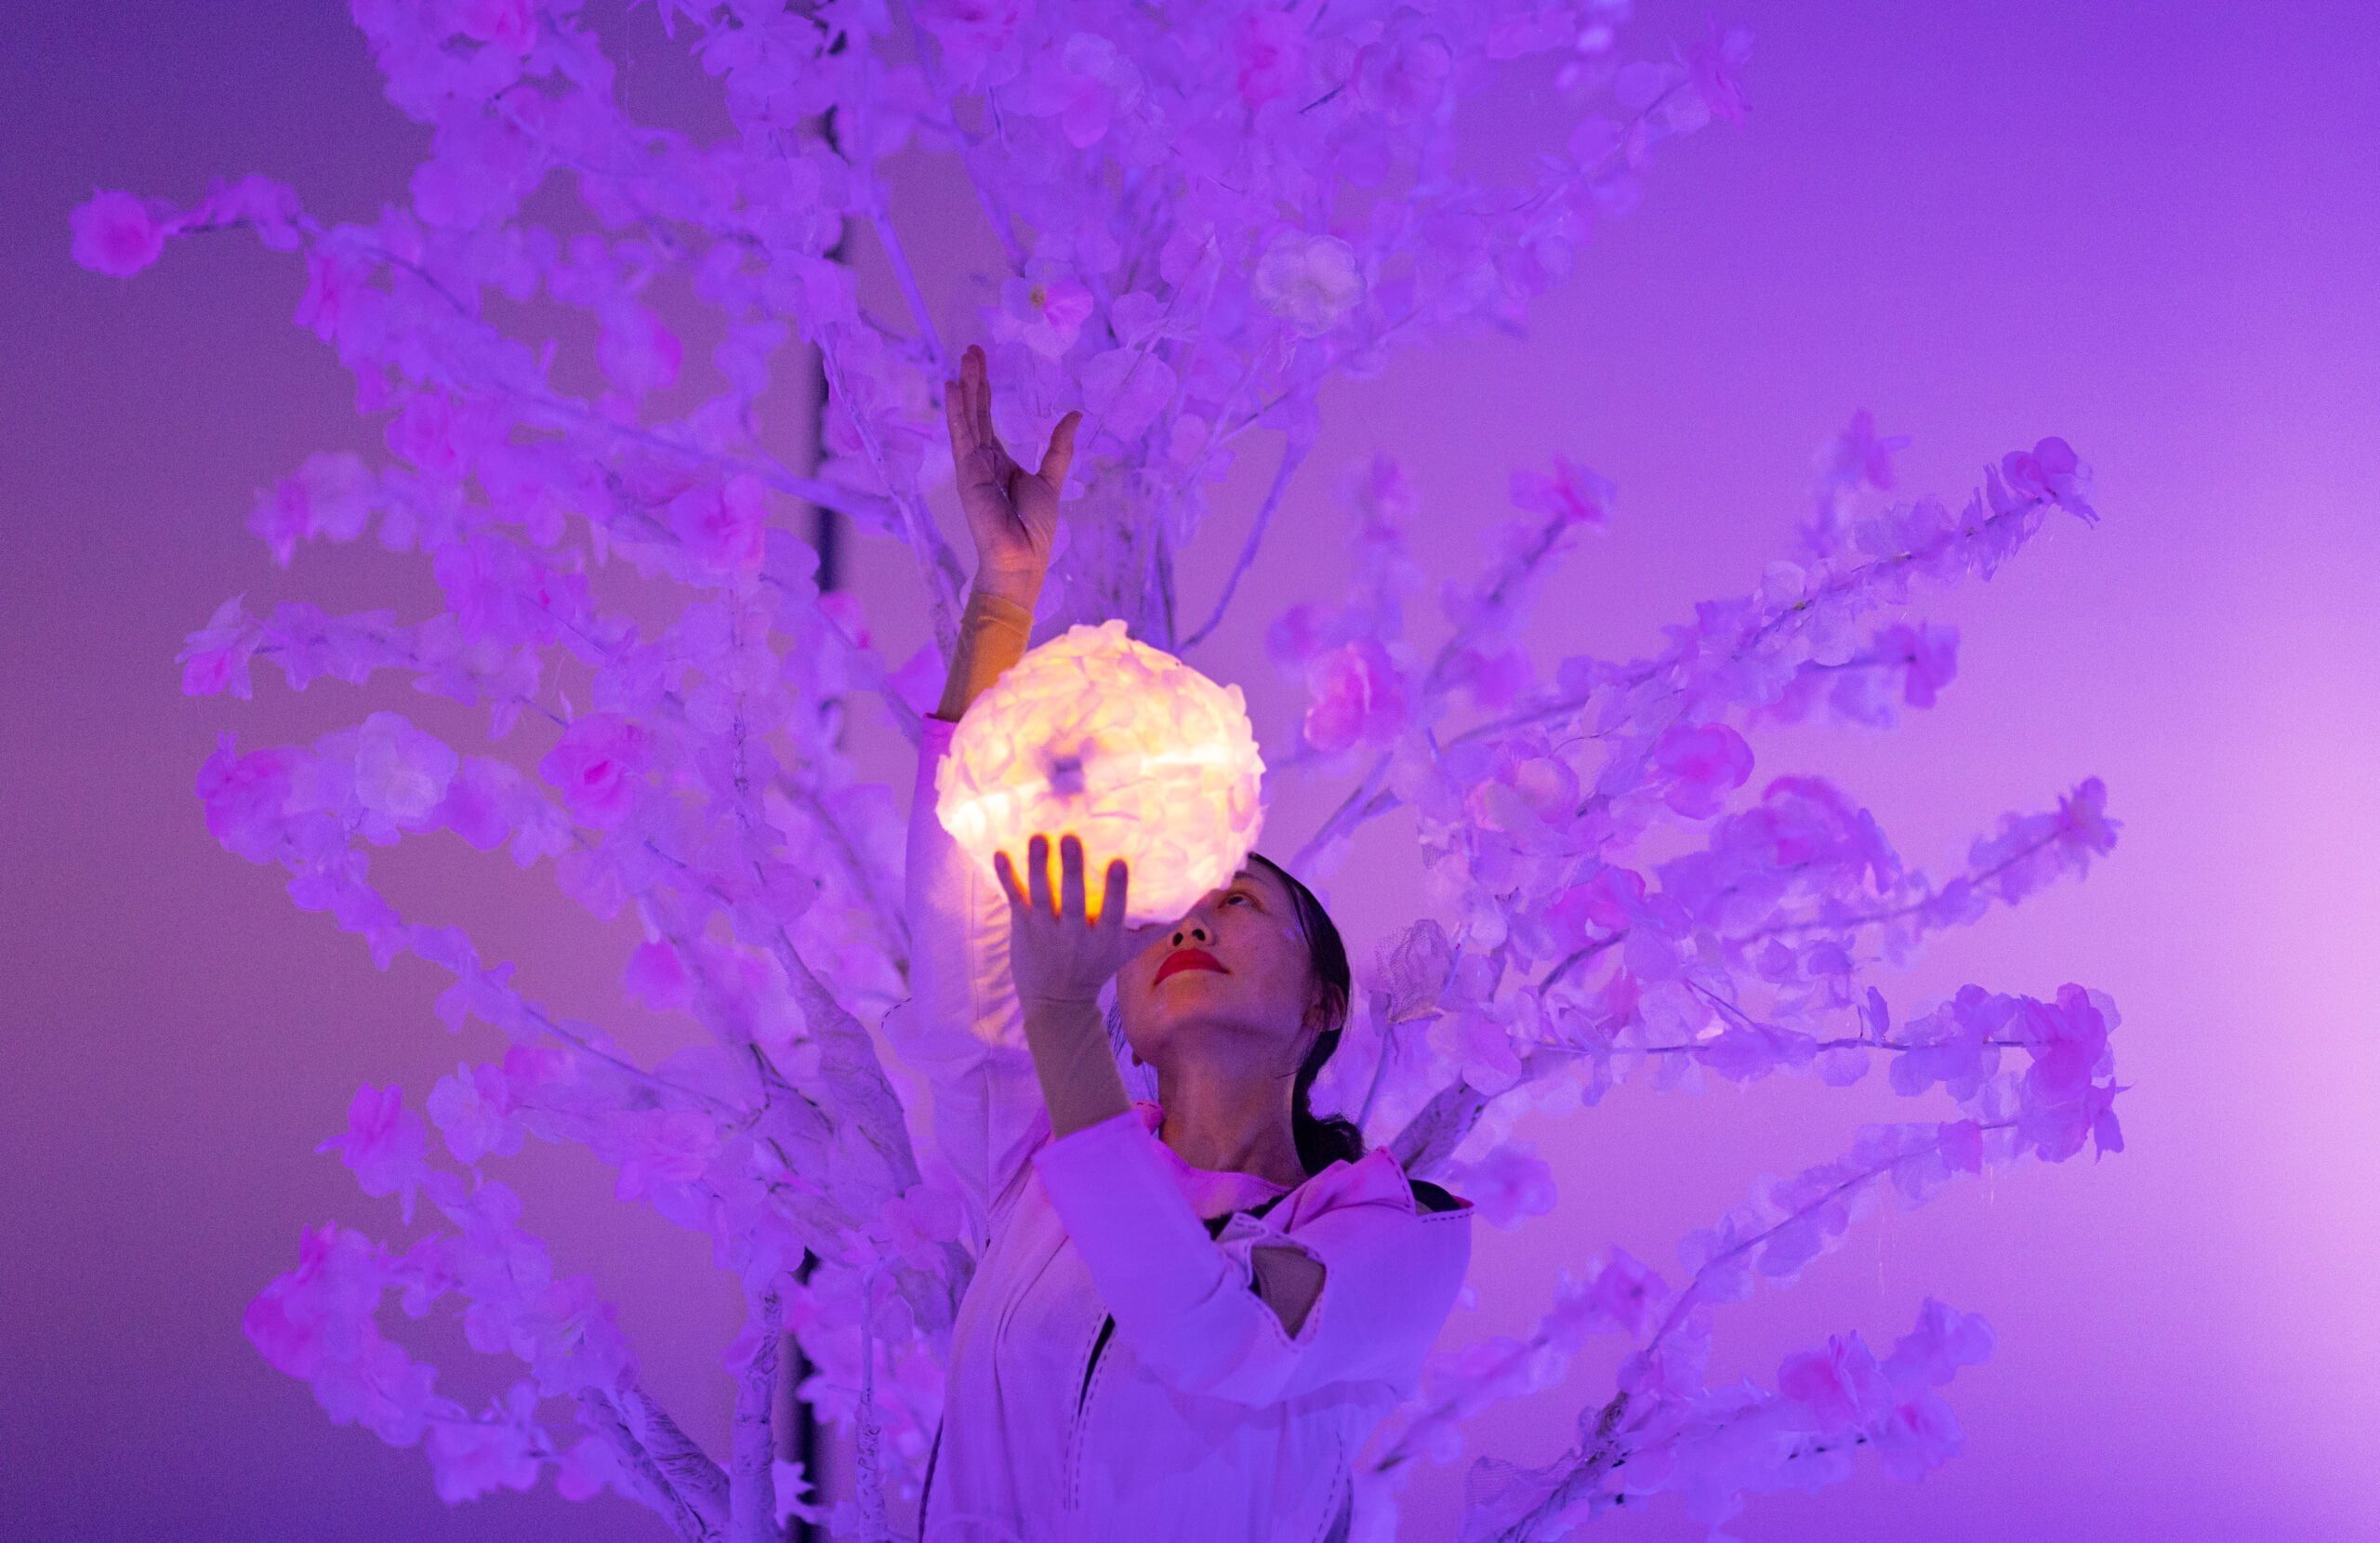 Płatki i baśnie, zdjęcie ze spektaklu Panta Rei Danseteater. Tancerka stoi na tle białego drzewa, w ręku trzyma puszystą świecącą białą kulę.